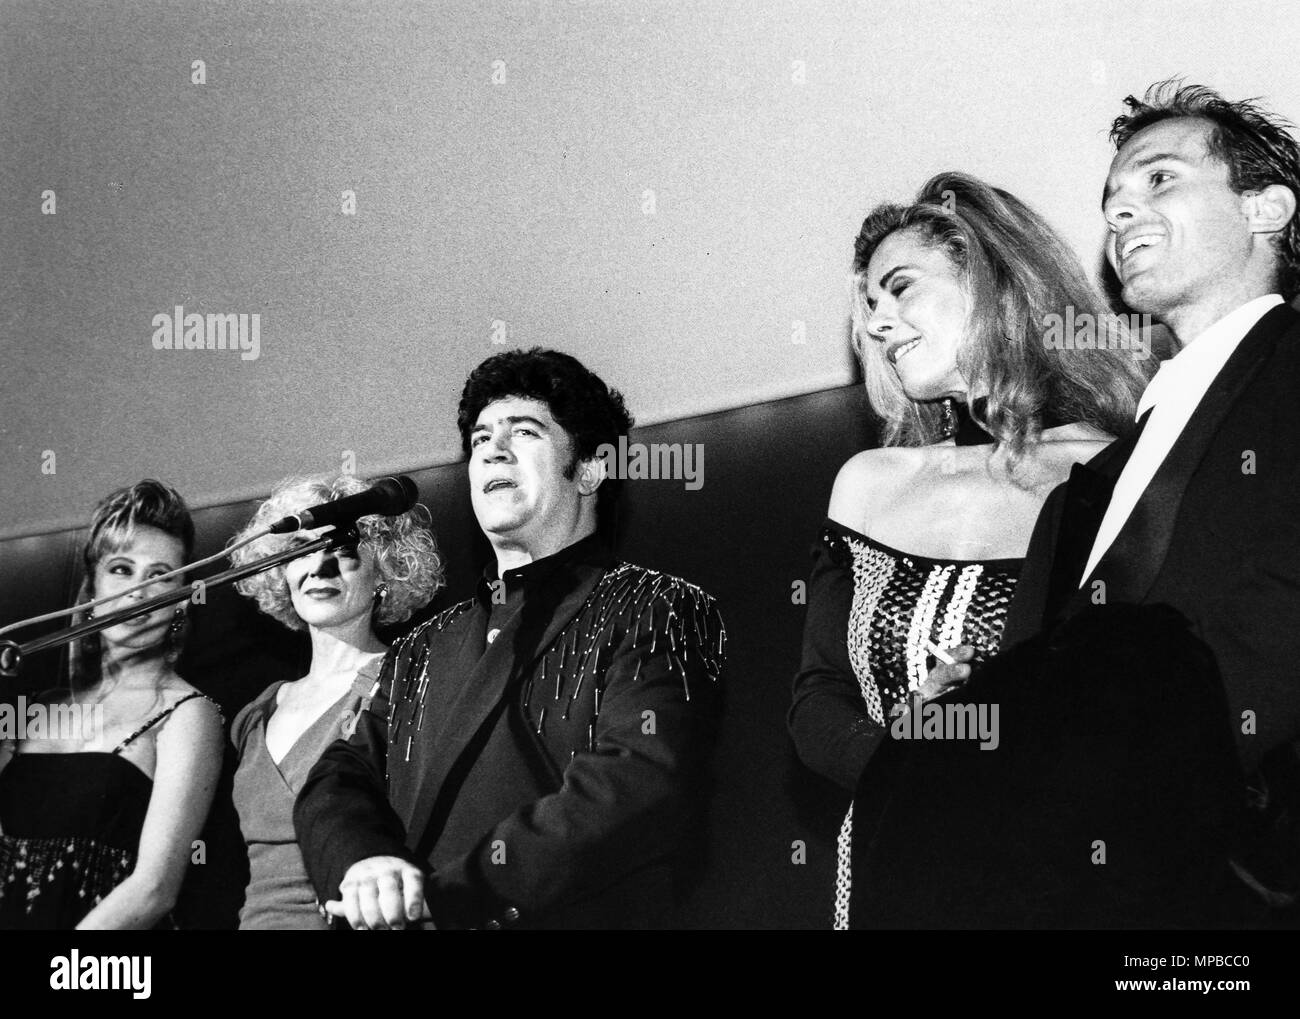 Cristina marcos, María paredes, Pedro Almodóvar, Bibi Anderson, Miguel  bosè, cast High Heels, 1991 Fotografía de stock - Alamy